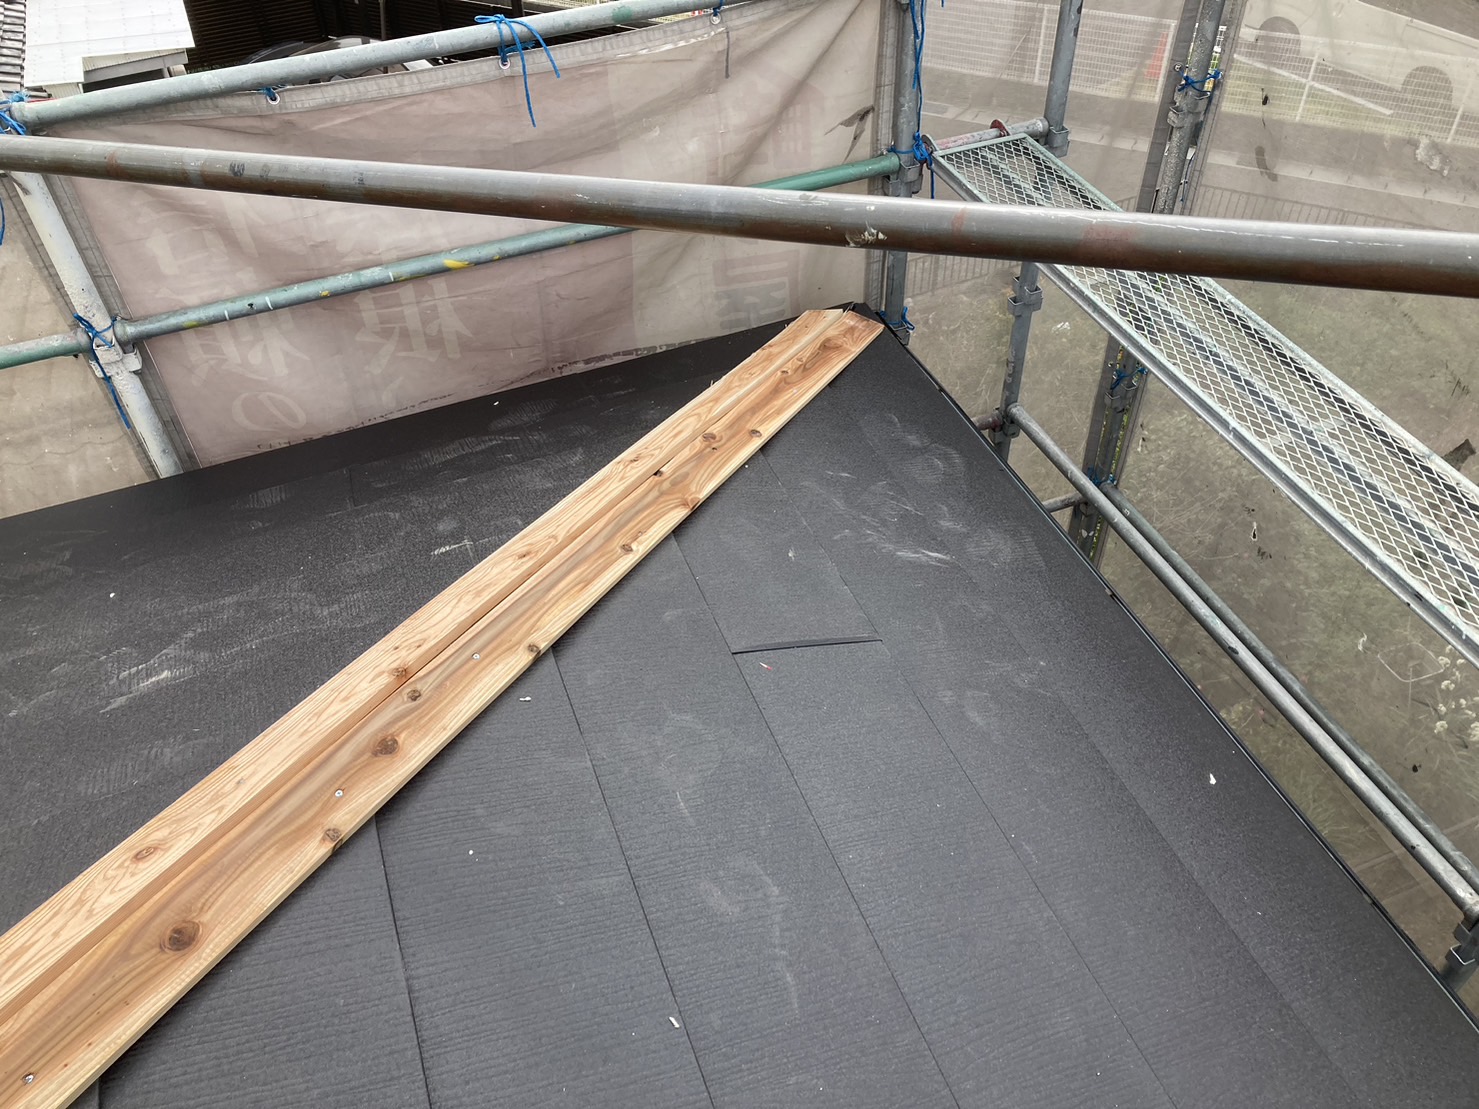 鈴鹿市クボタアーバニー屋根材のカバー工法、棟板金取付け前の貫板取付け